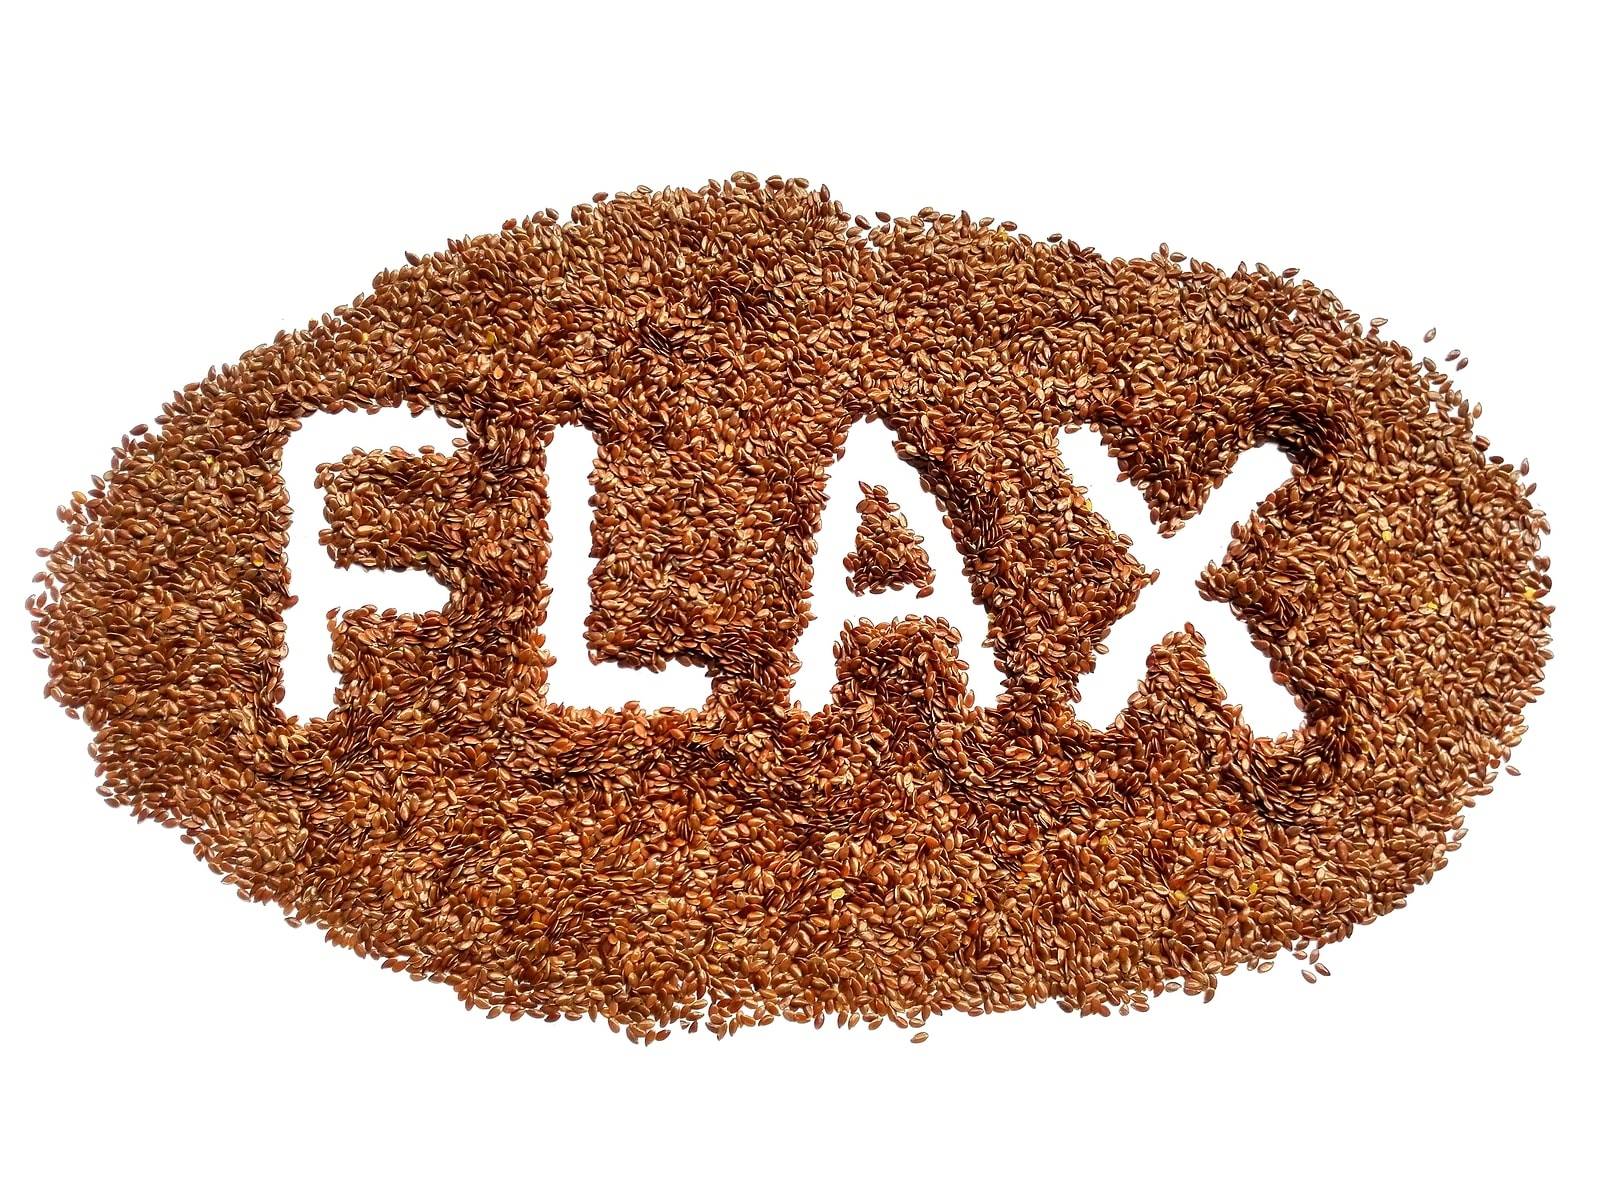 Flaxseeds